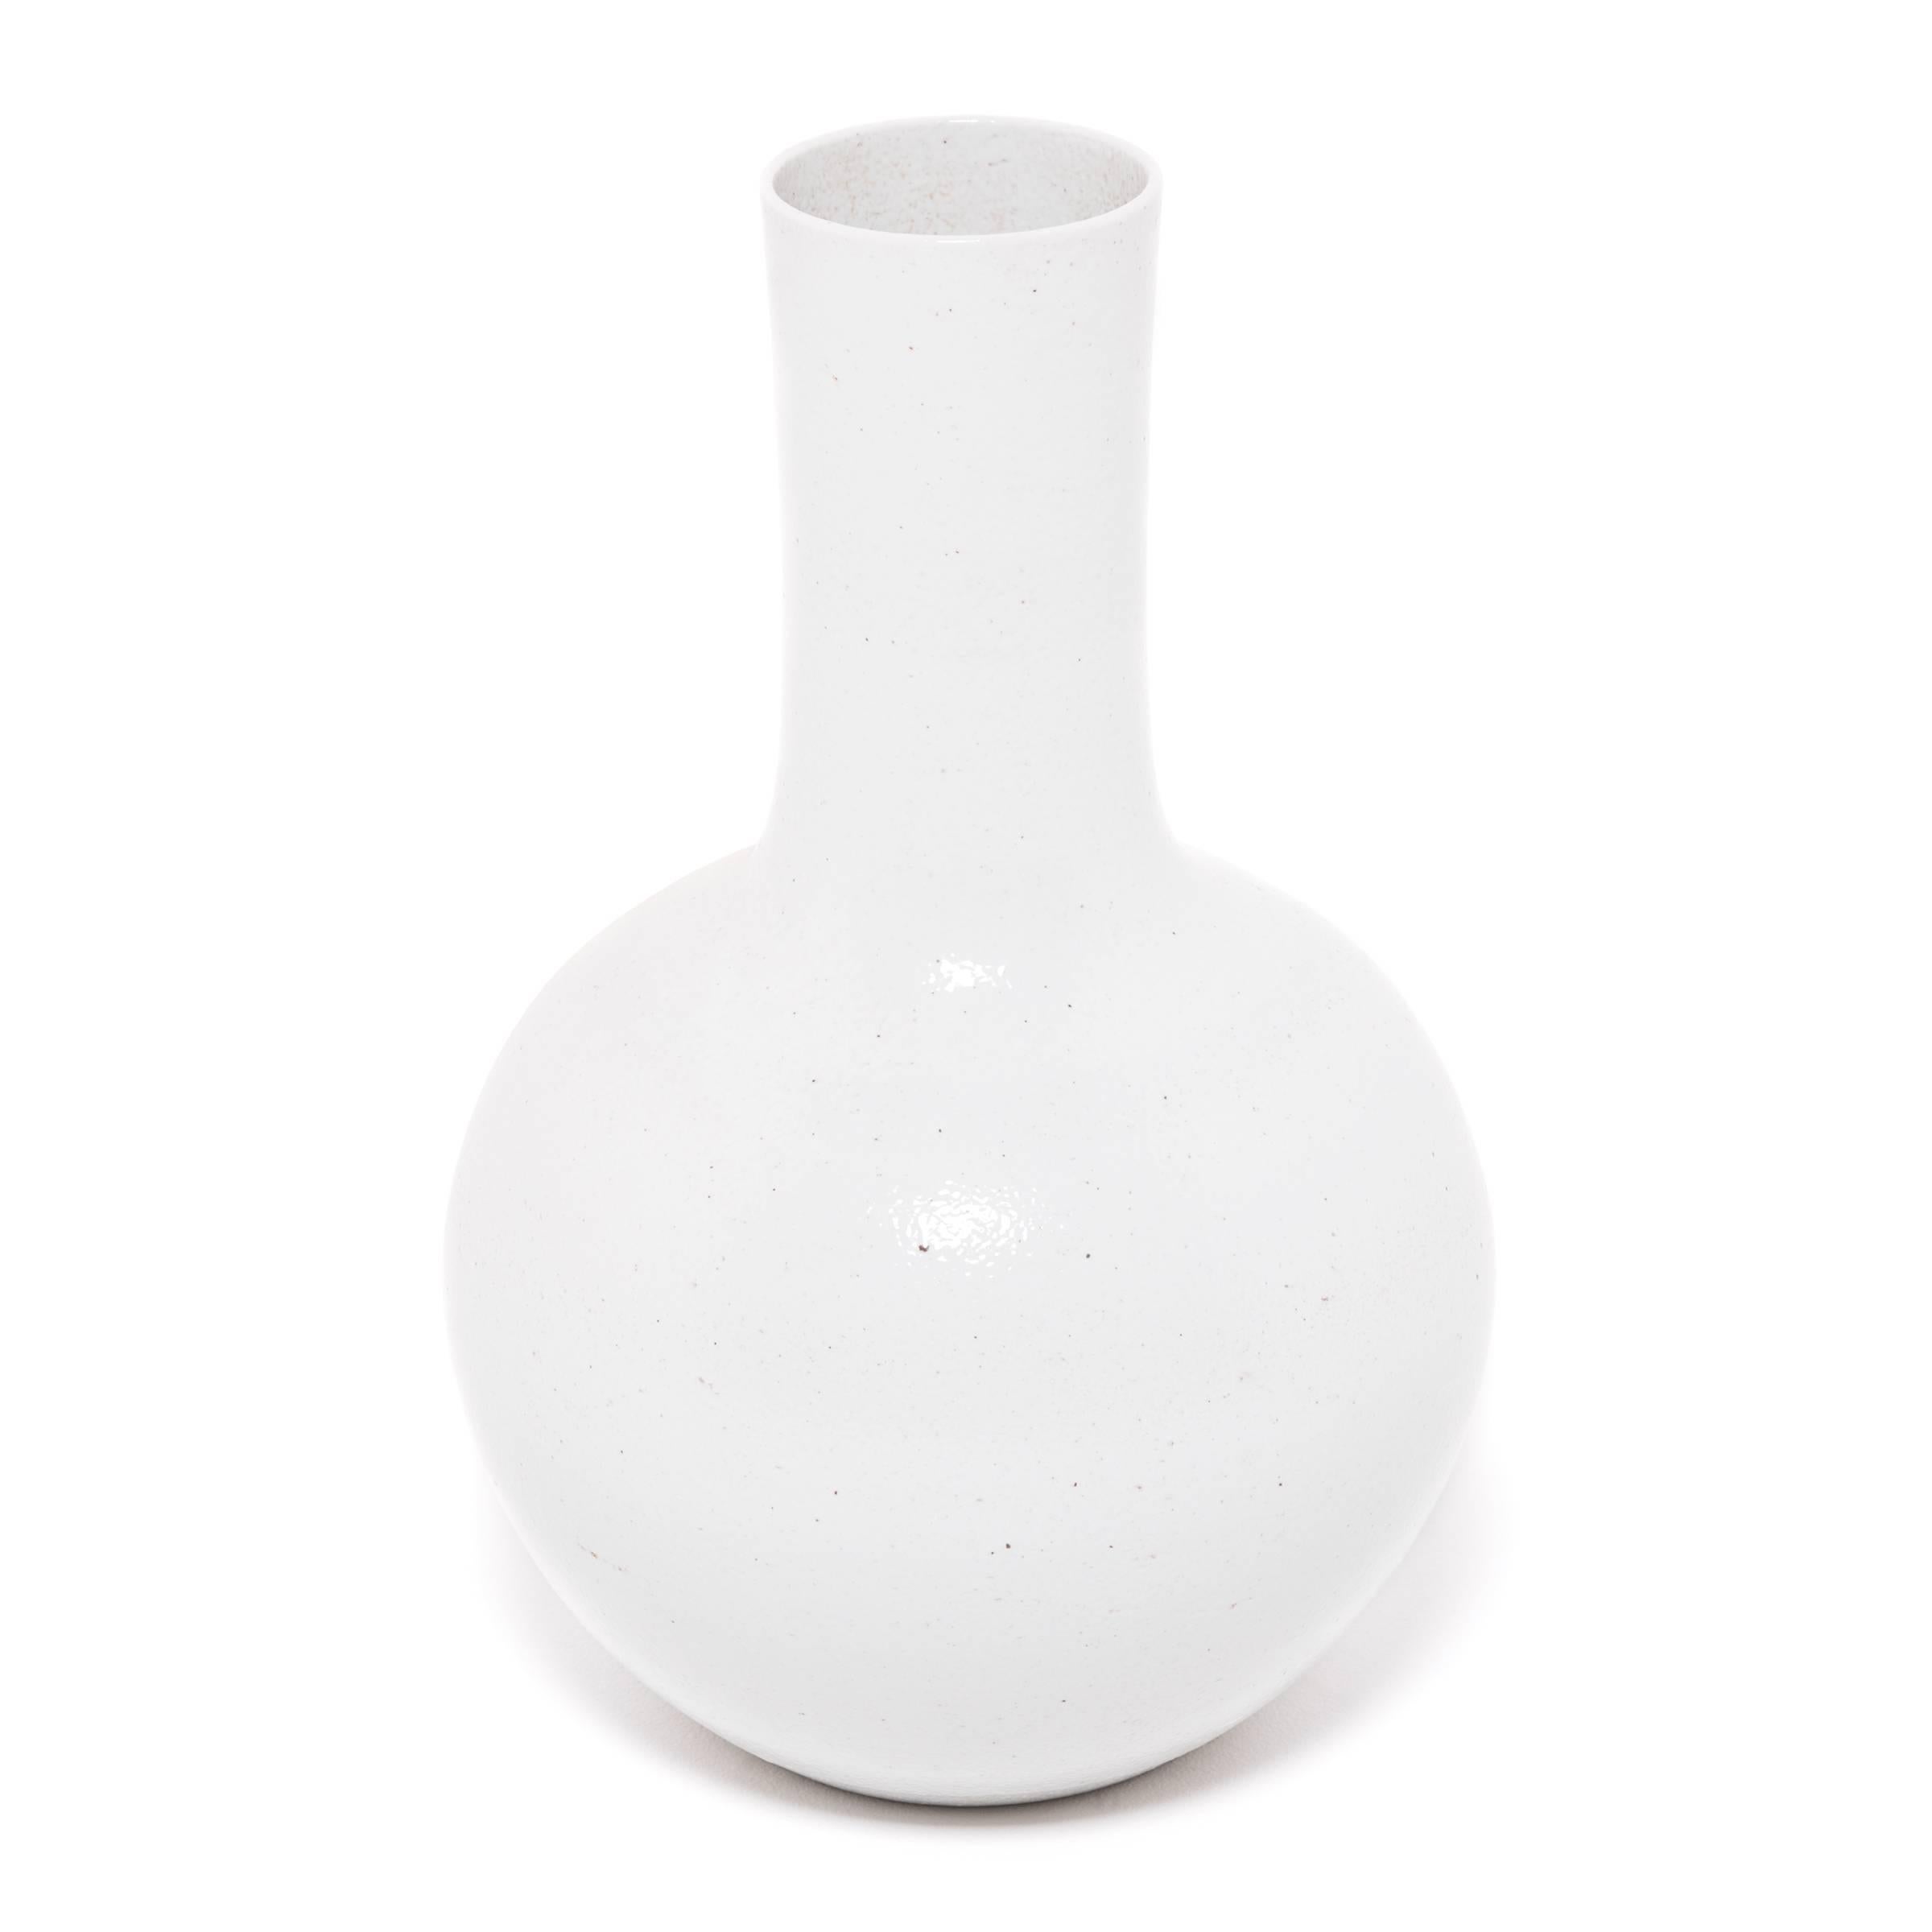 S'inspirant d'une longue tradition chinoise de la céramique, ce vase à long col est recouvert d'une glaçure blanche laiteuse. Sculpté par des artisans de la province chinoise du Zhejiang, ce grand vase réinterprète une forme traditionnelle connue